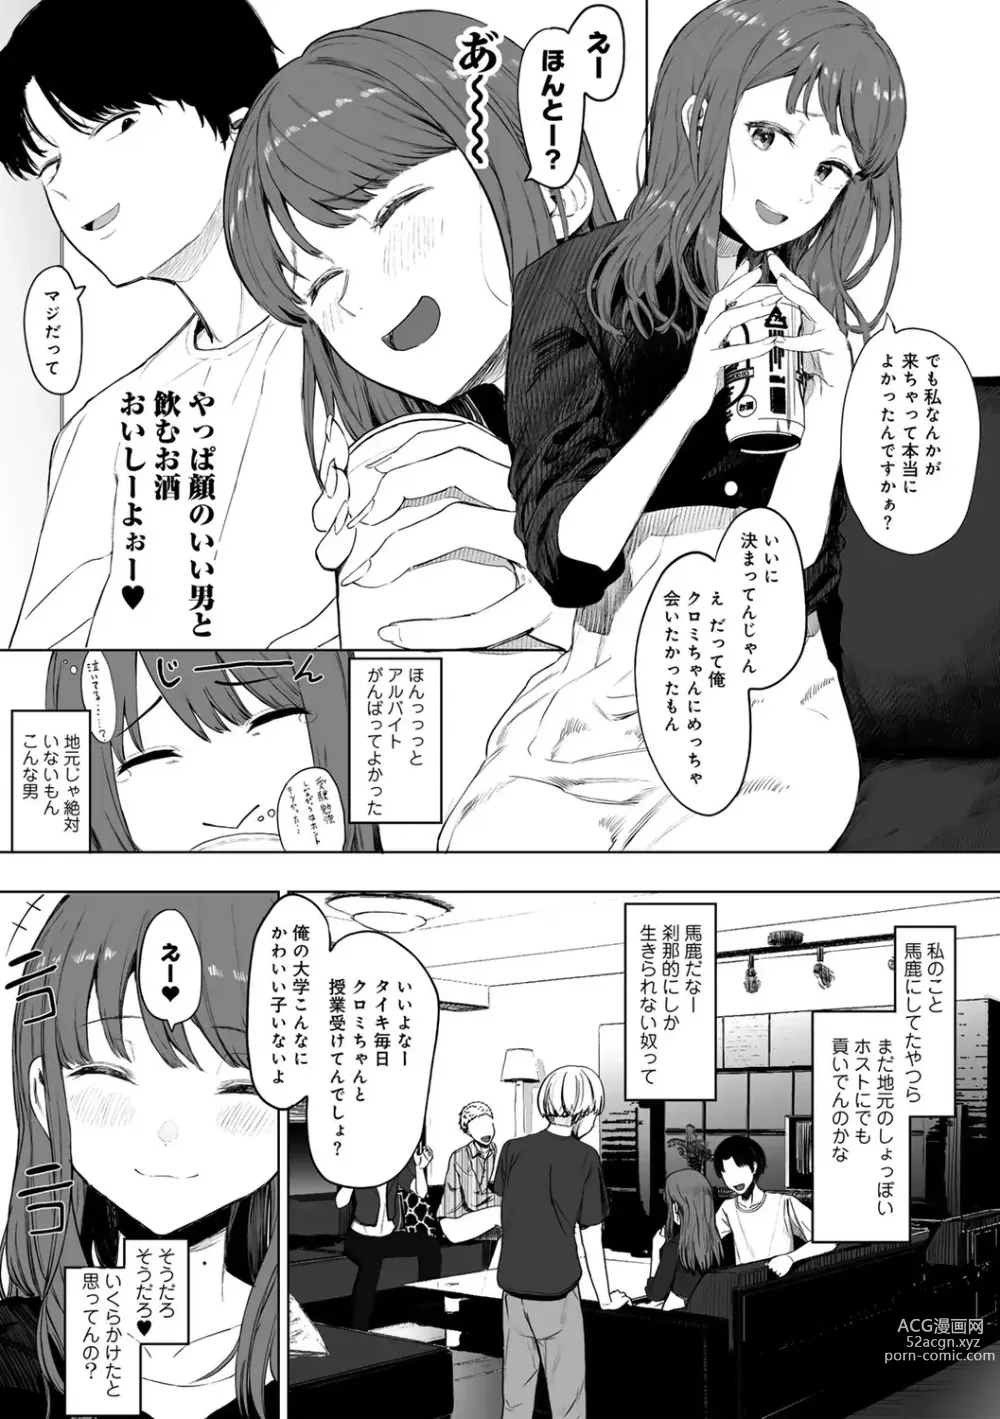 Page 5 of manga COMIC kisshug vol.3